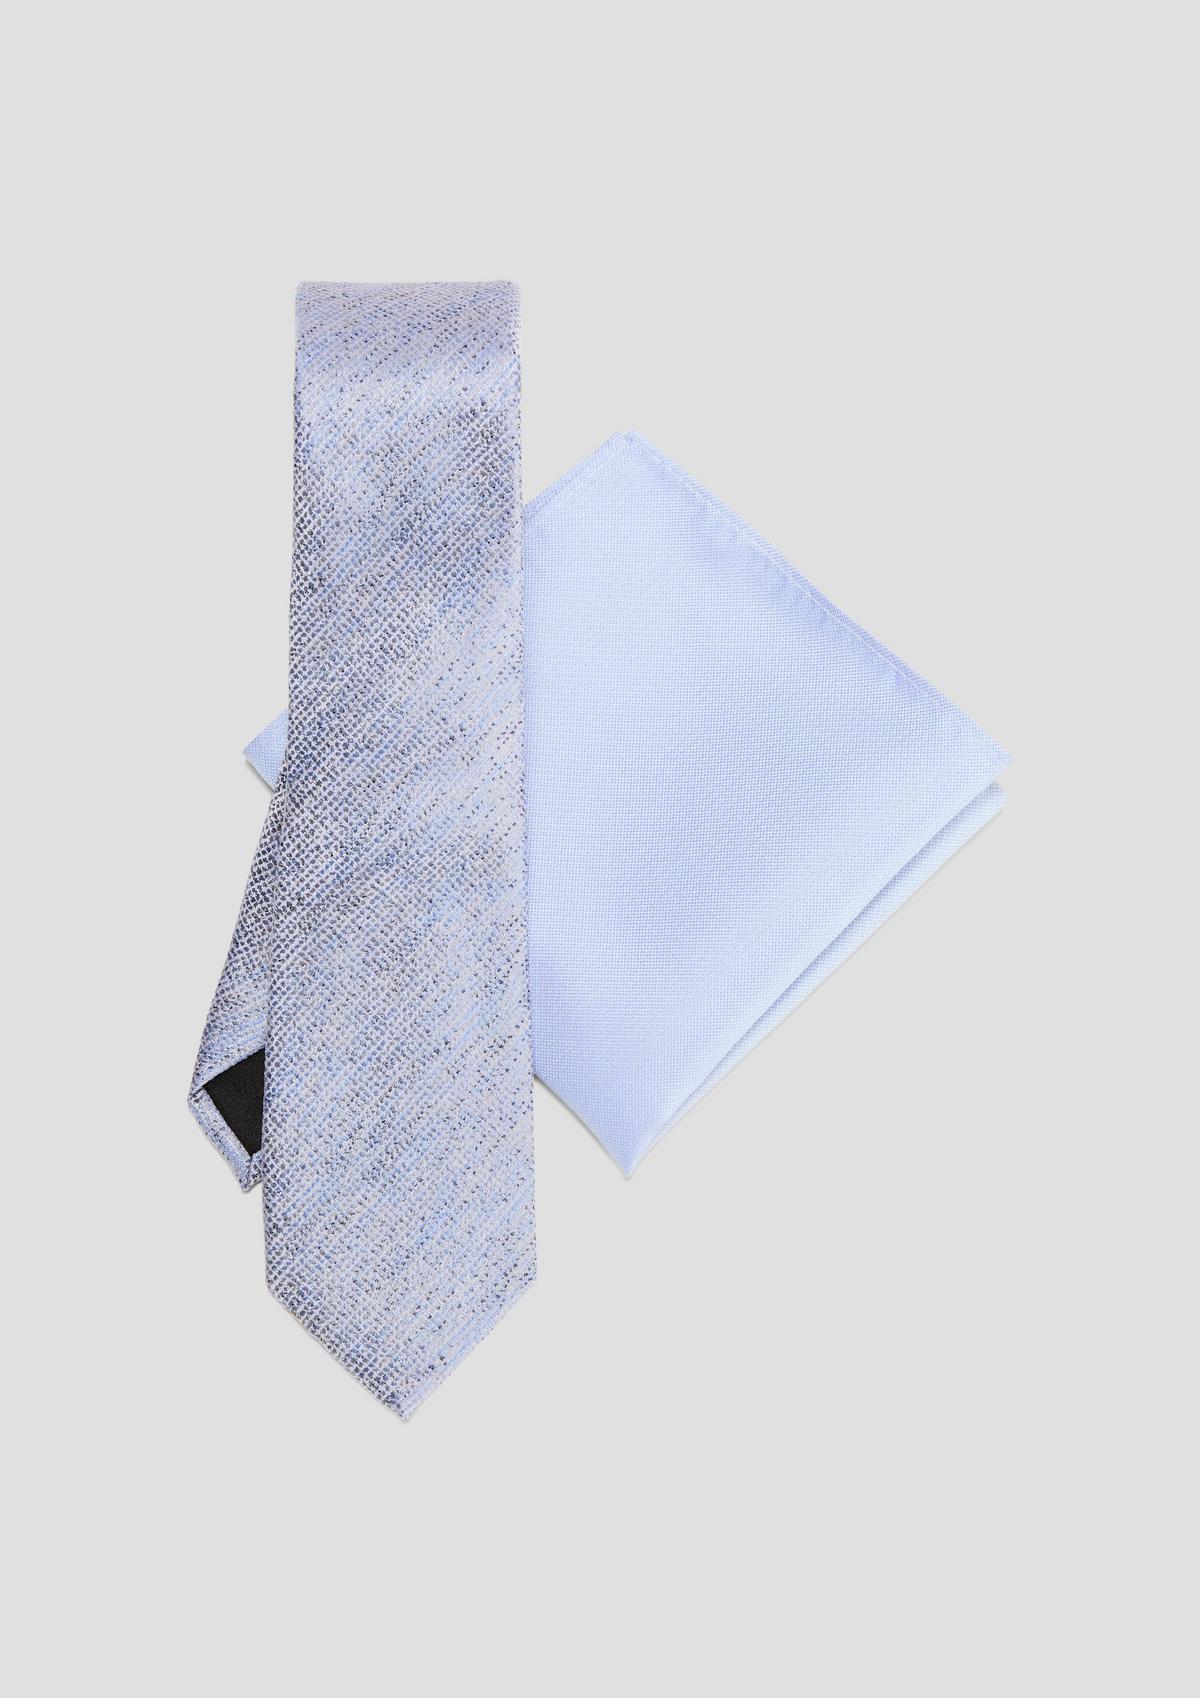 s.Oliver Krabička na doplňky s kravatou a kapesníkem